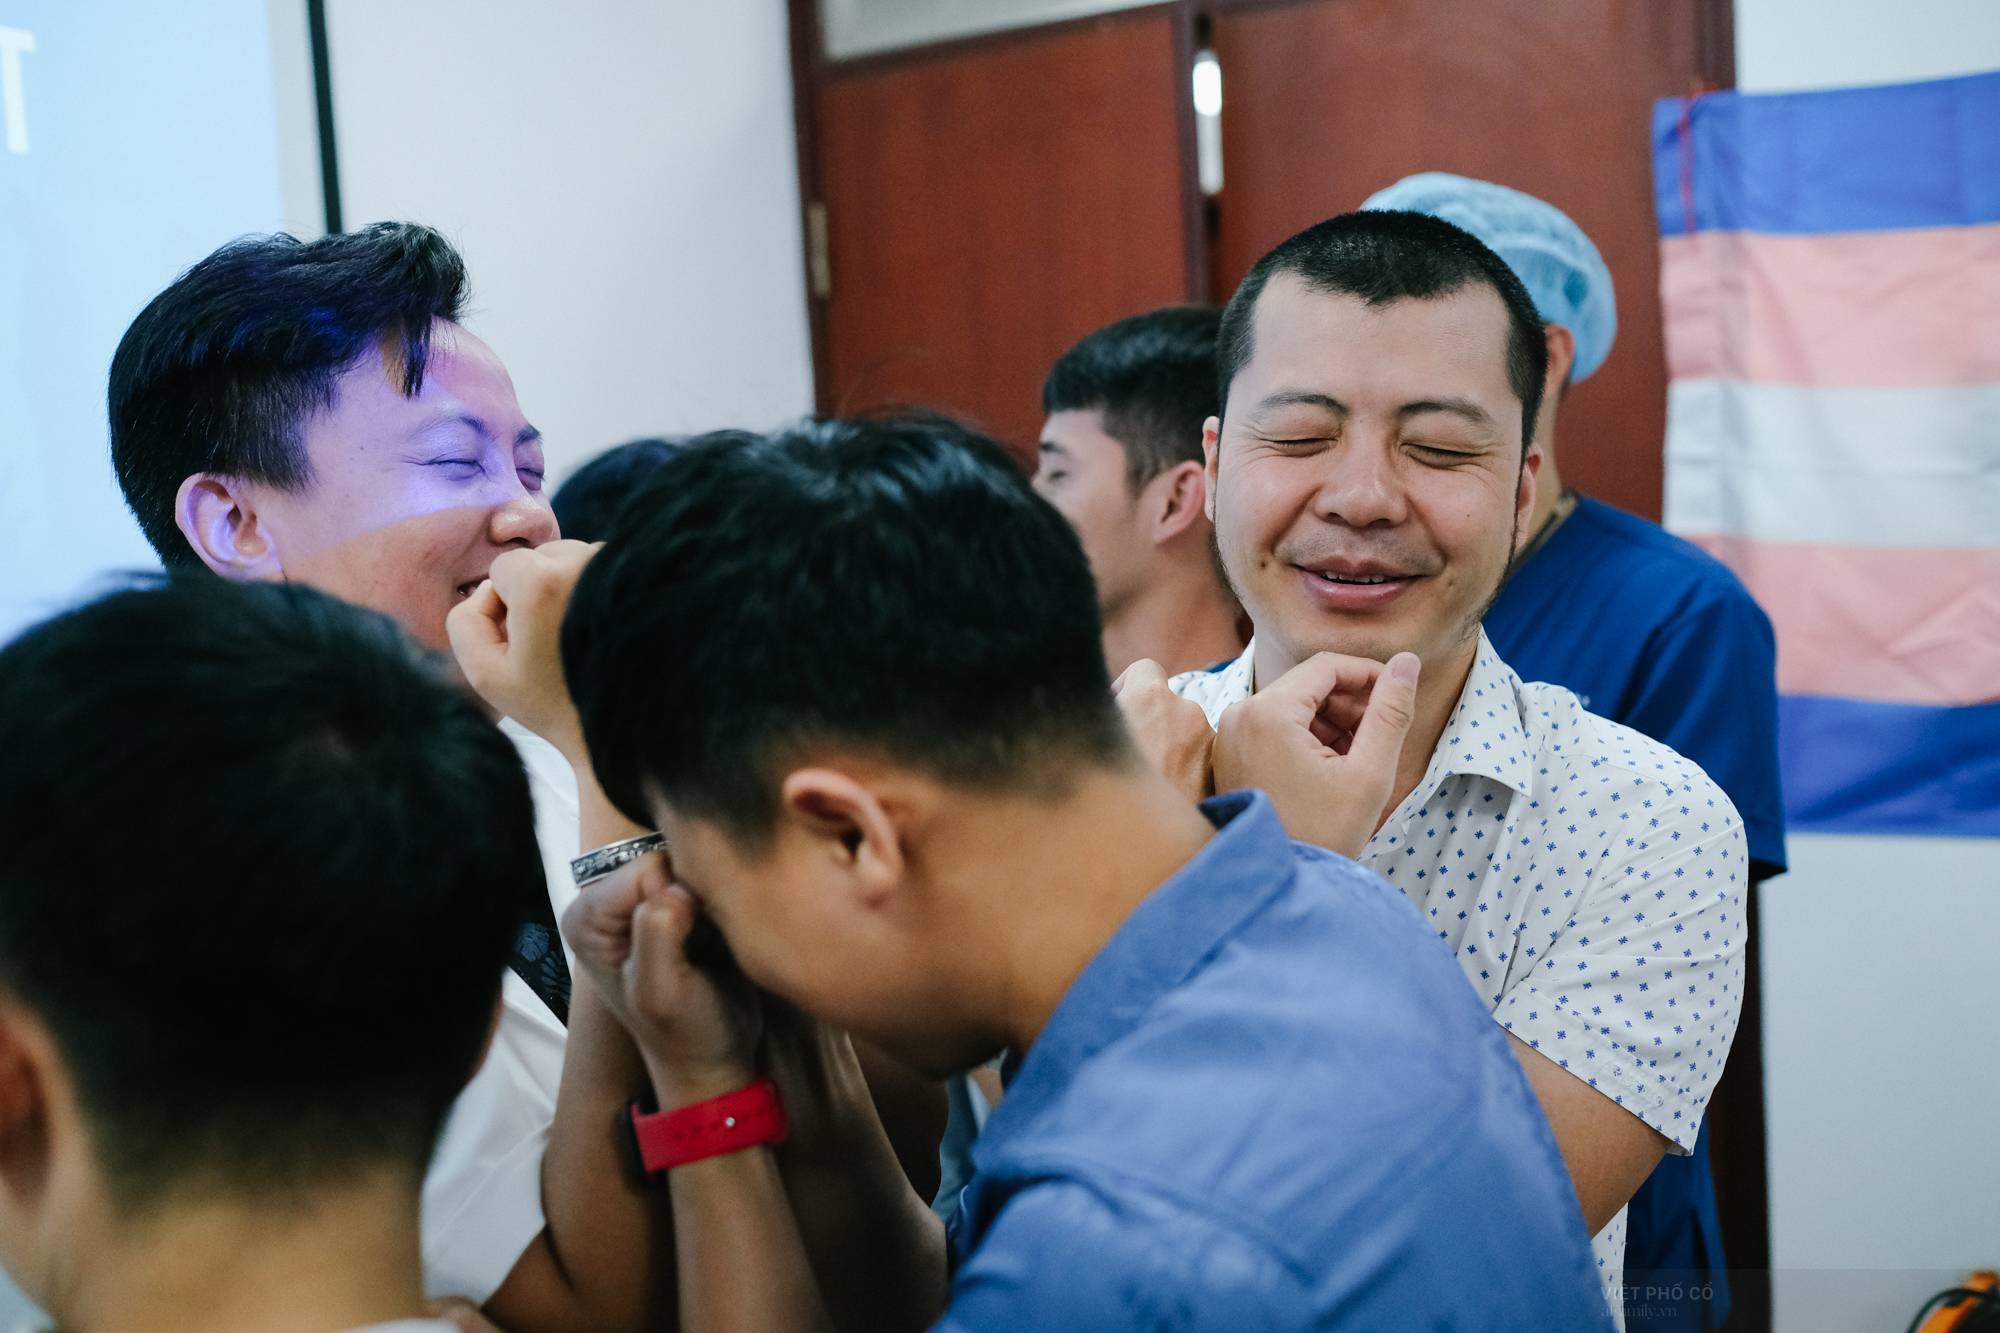 Bác sĩ, chuyên gia tâm lý, nhân viên y tế bệnh viện Hồng Hà (Hà Nội) cùng cộng đồng LGBT chơi trò Vườn thú, một trò chơi “kinh điển” của các nhóm cộng đồng LGBT khi muốn hình dung về các nhóm đa số và thiểu số trong xã hội. Ảnh Hoàng Việt